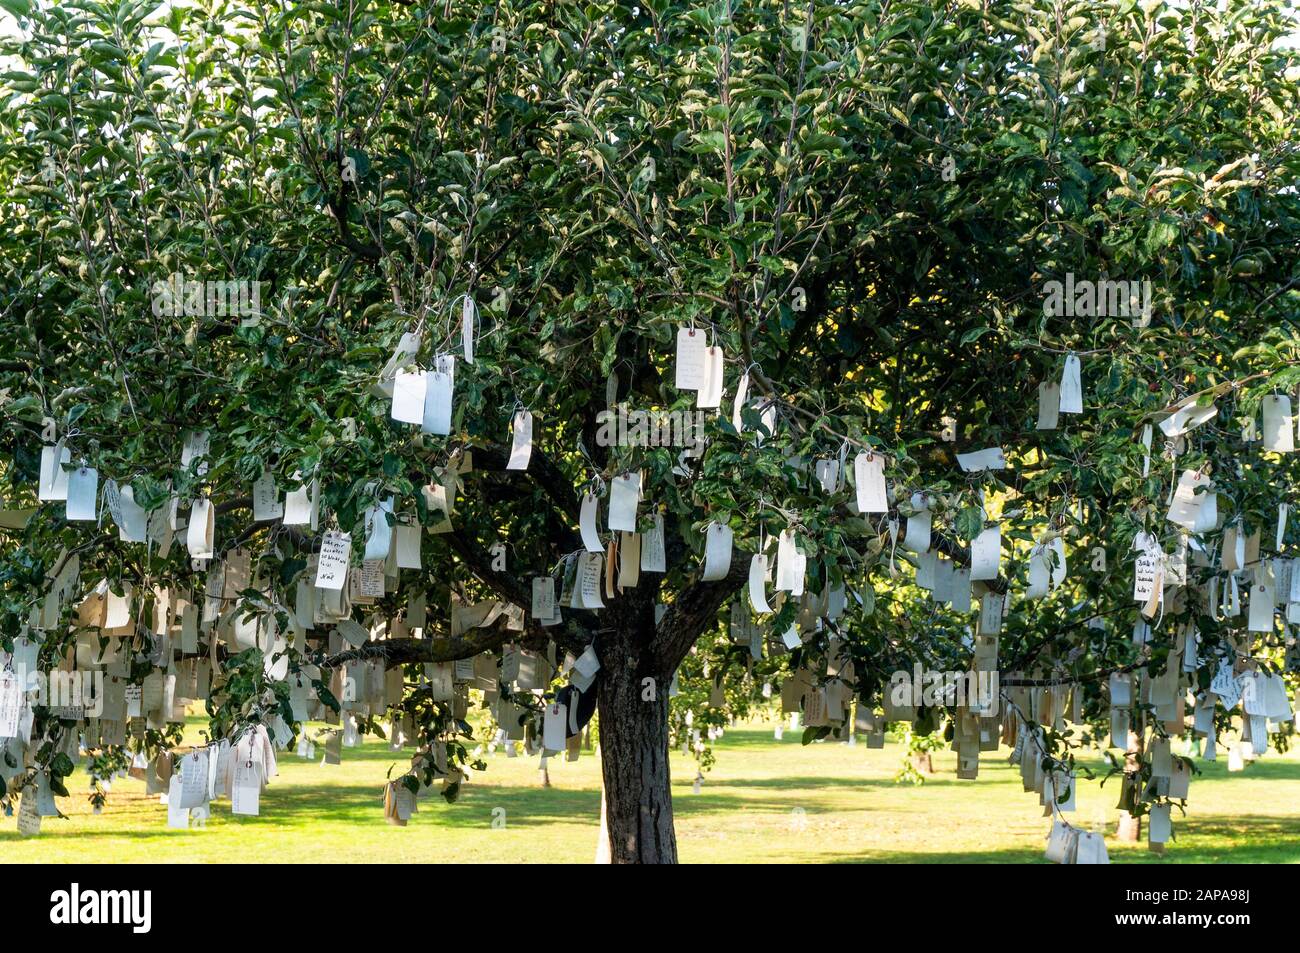 Etiketten mit Wünschen, die in Bäumen hängen. Sie waren Teil der Installation "Wunschbäume für Bad Homburg" von Yoko Ono im Rahmen der Biennale Blickachsen 1 Stockfoto